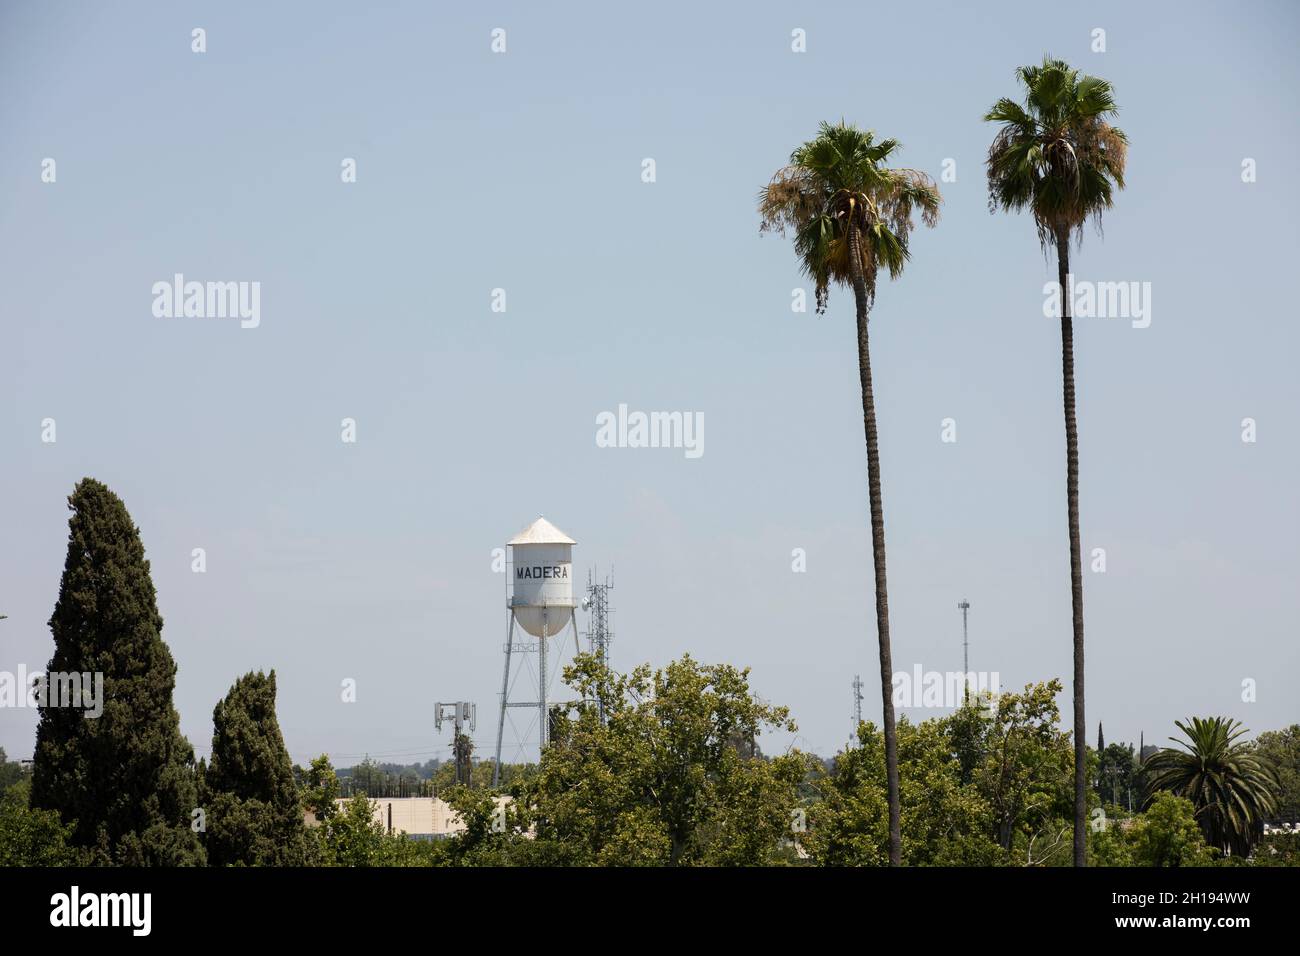 Madera, California, Stati Uniti d'America - 15 luglio 2021: Gli alberi incorniciano il punto di riferimento Madera Water Tower. Foto Stock